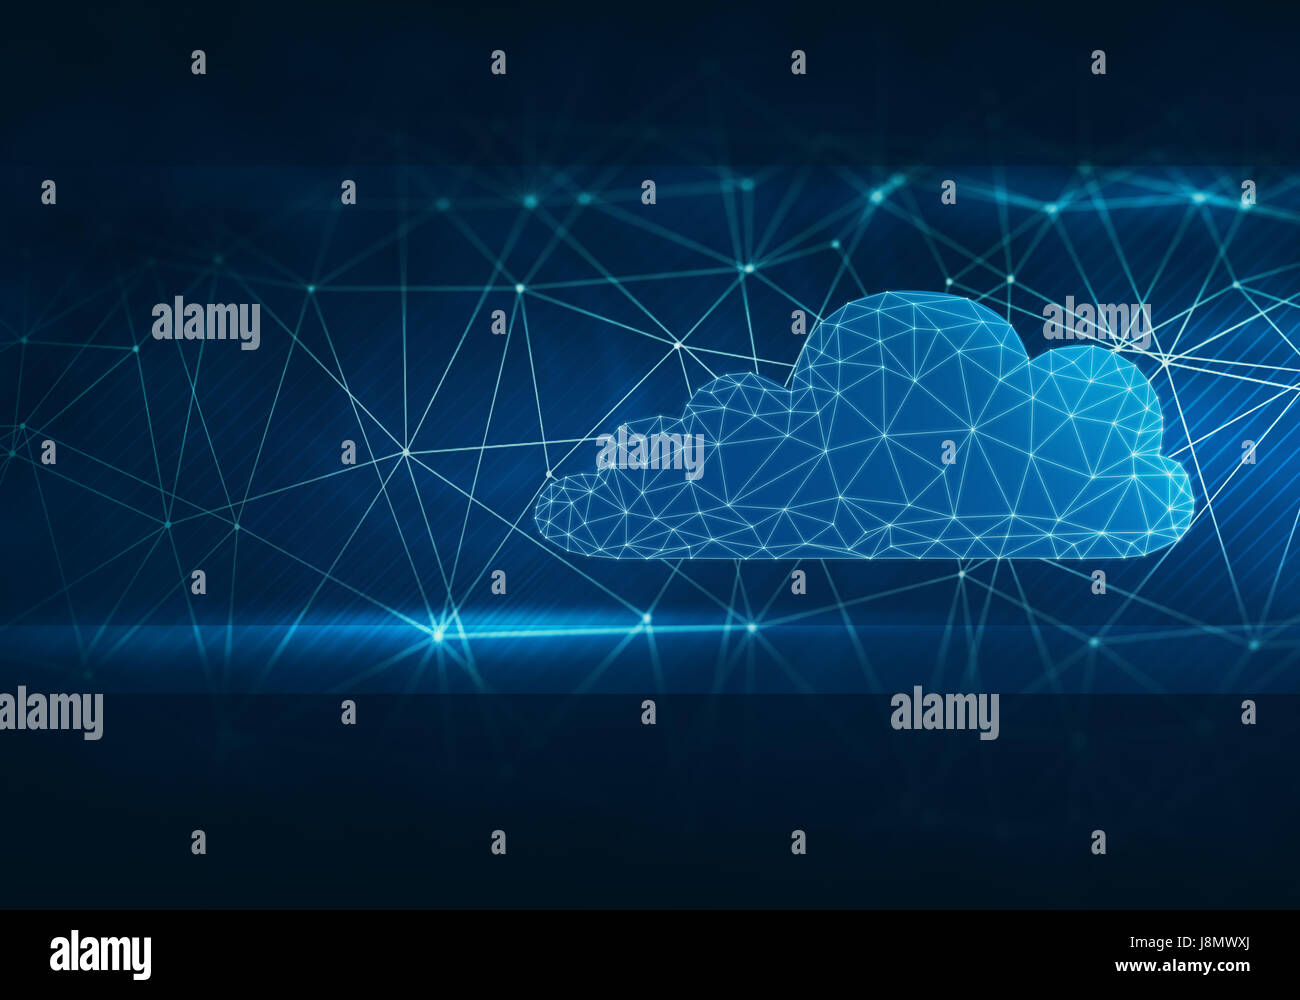 Résumé de l'image numérique en forme de nuage sur la structure du réseau avec les reflets sur l'arrière-plan cosmique. Banque D'Images